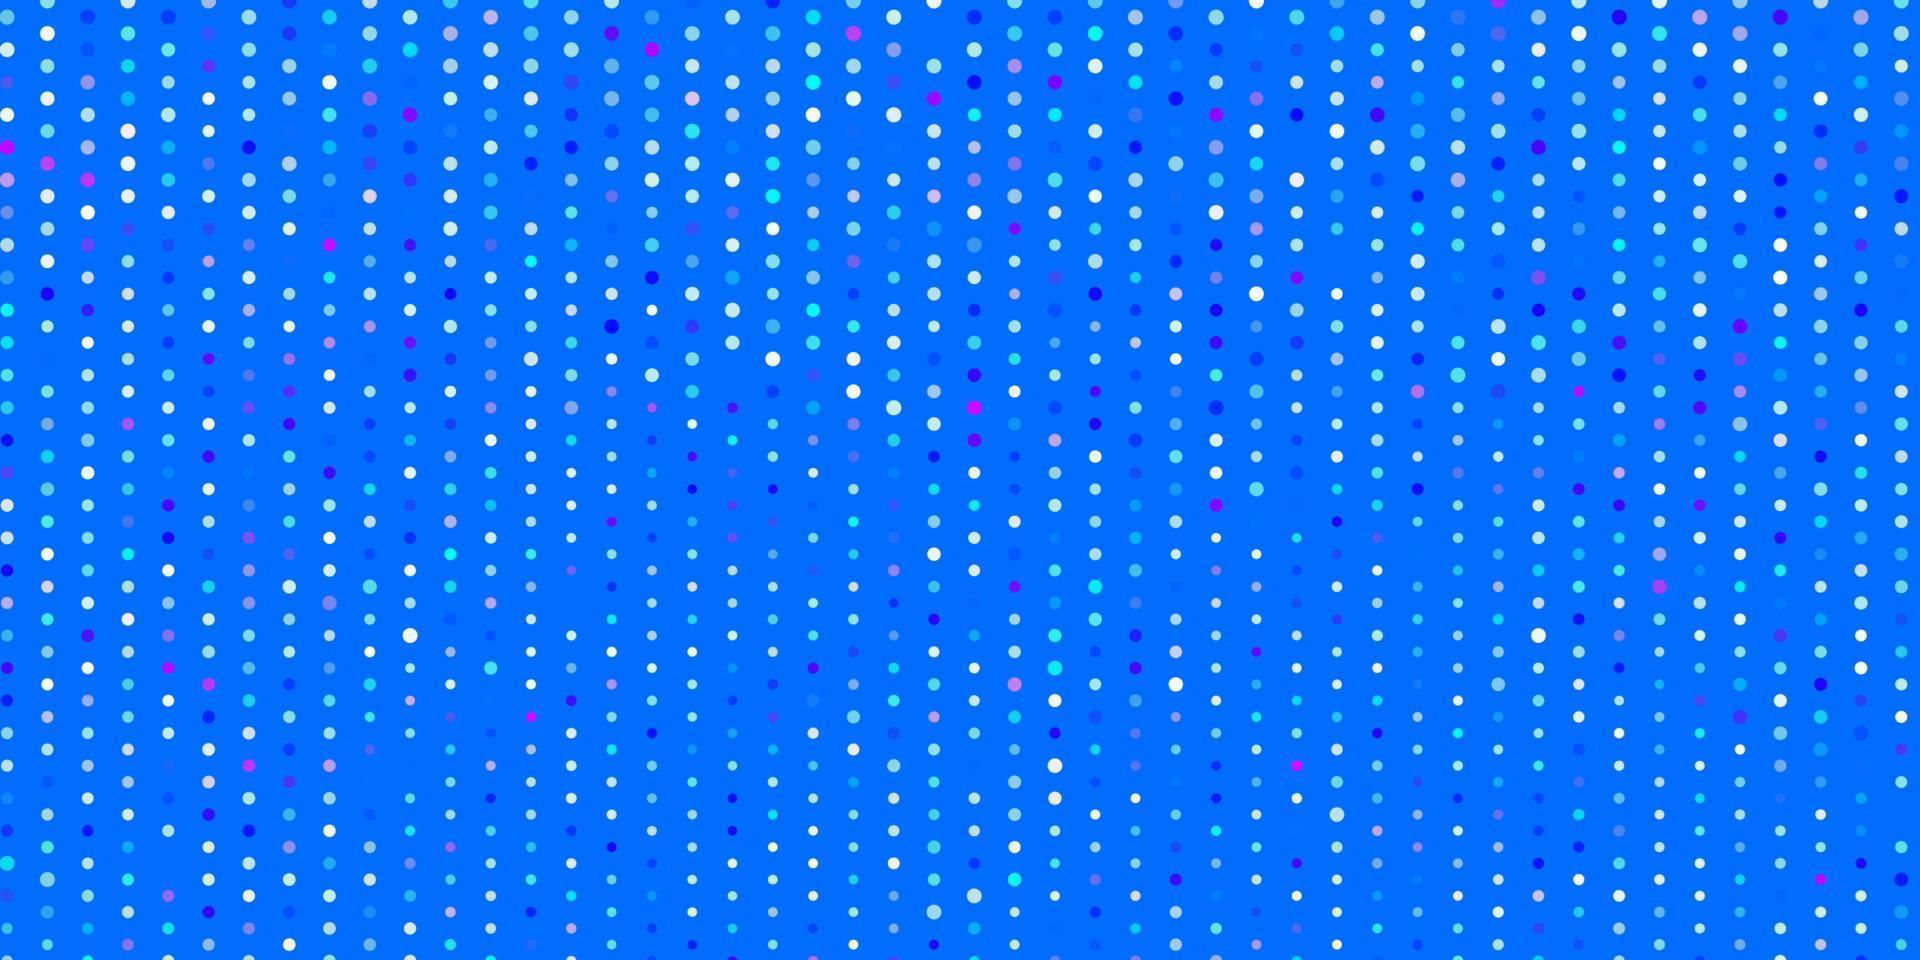 hellrosa, blauer Vektorhintergrund mit Blasen. vektor